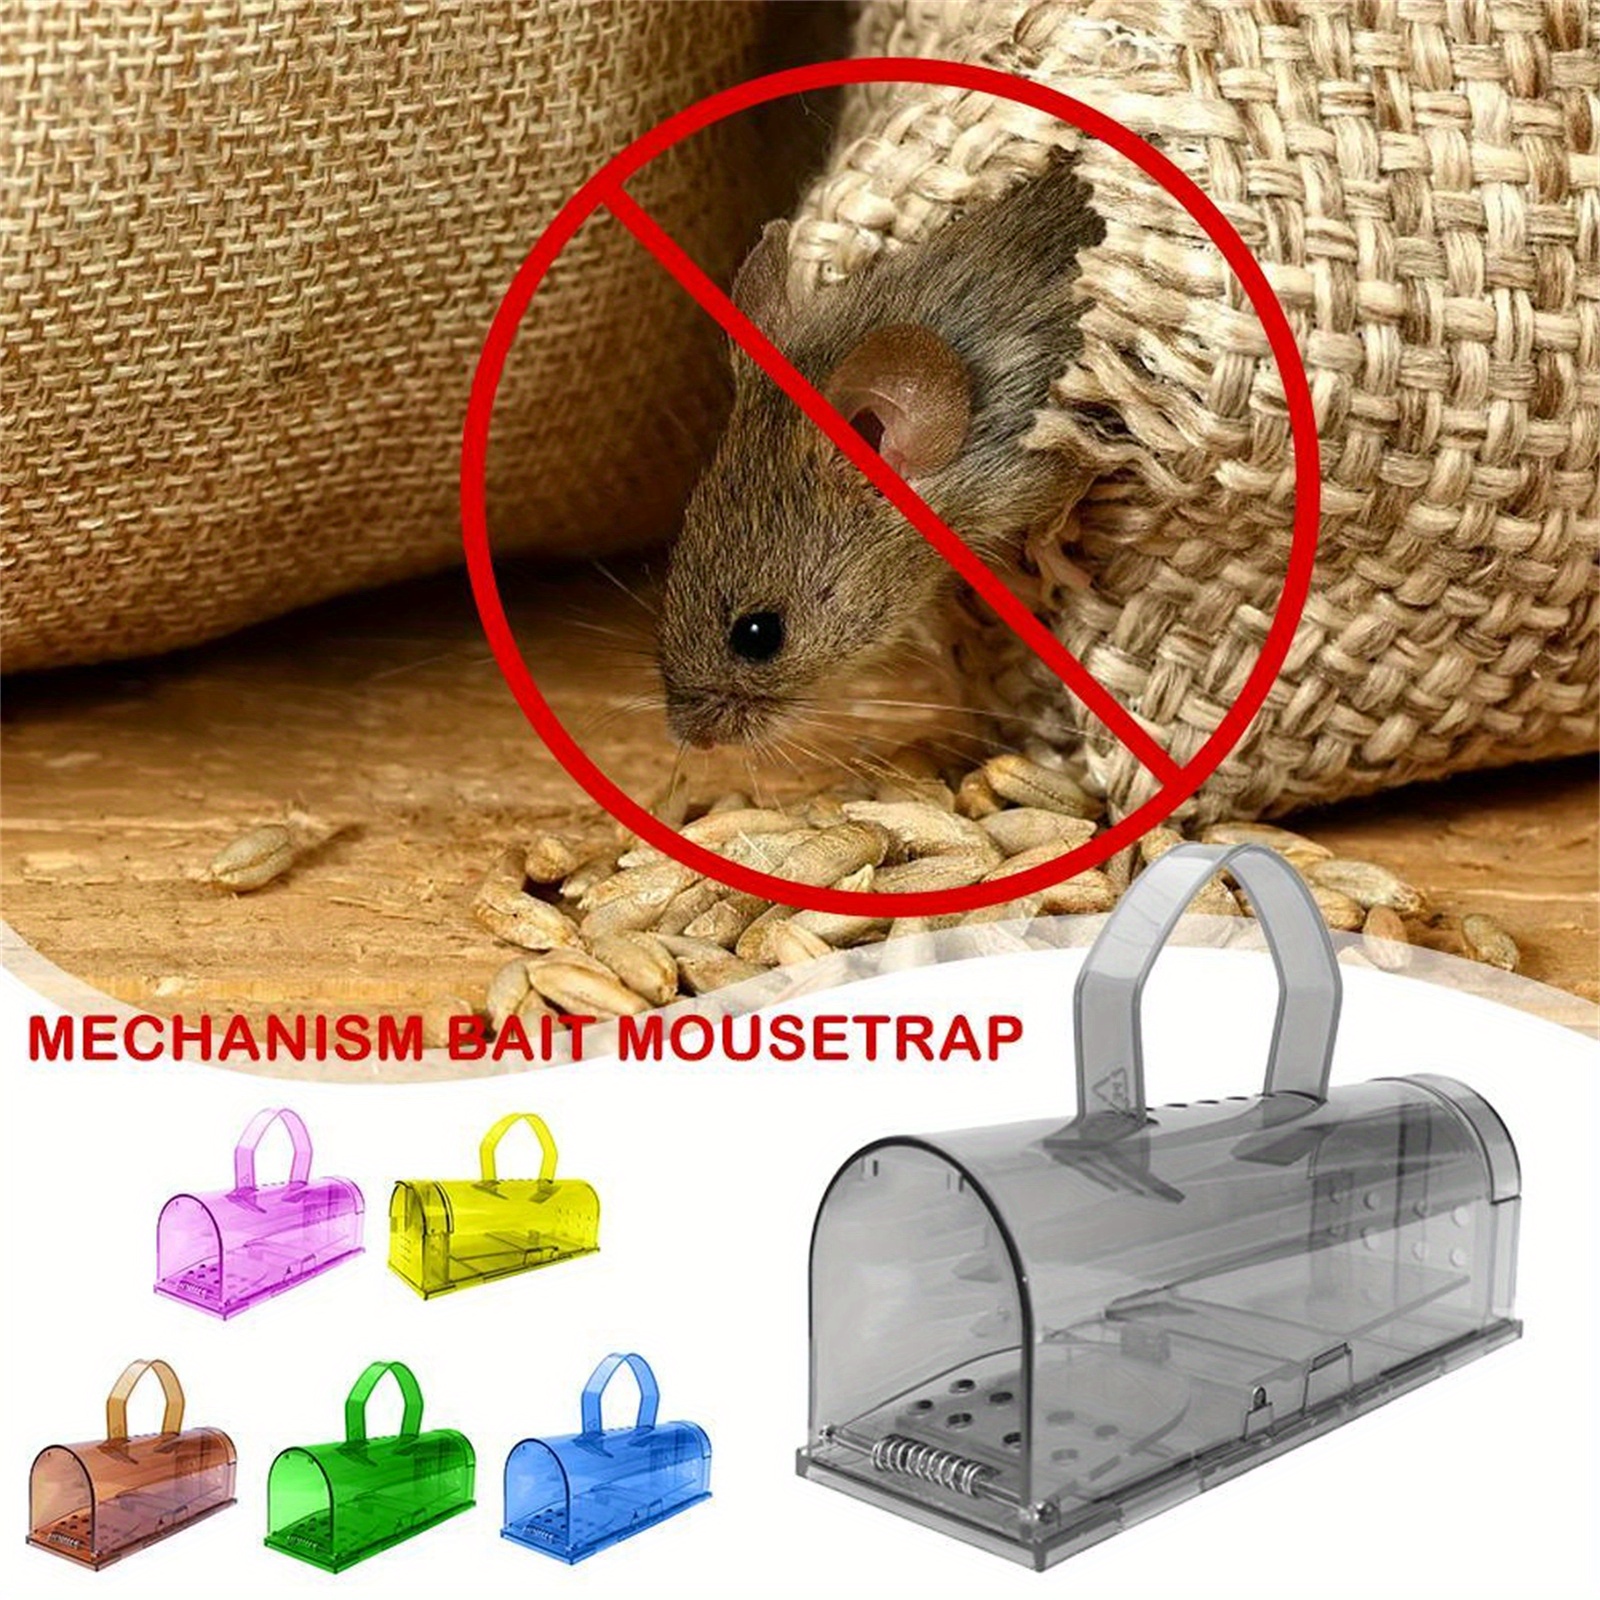 Trampas para ratones: atrapa al intruso sin matarlo